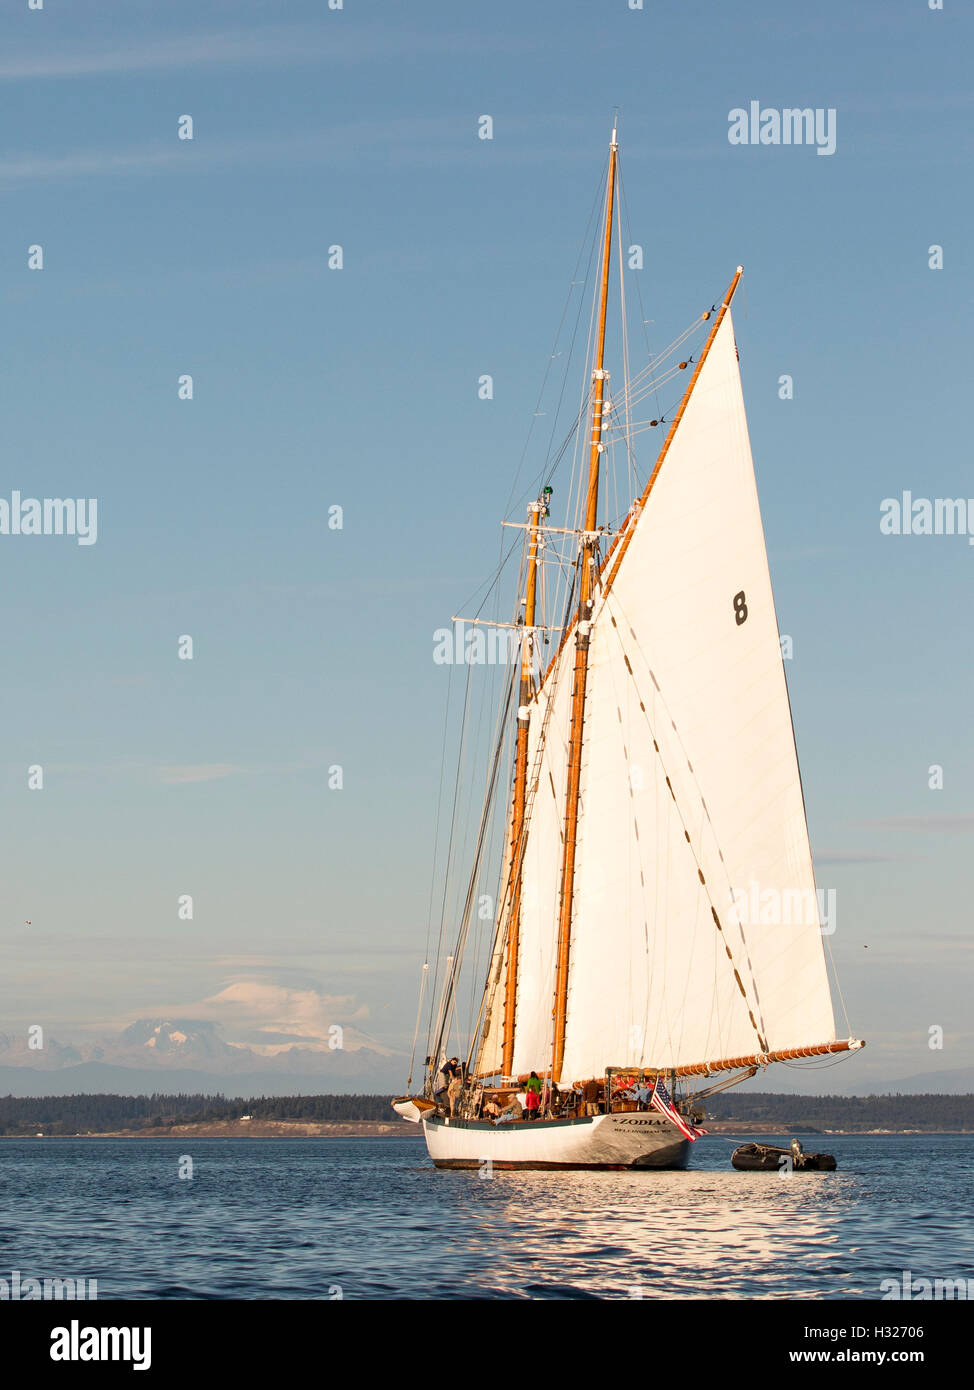 Barco vela immagini e fotografie stock ad alta risoluzione - Alamy